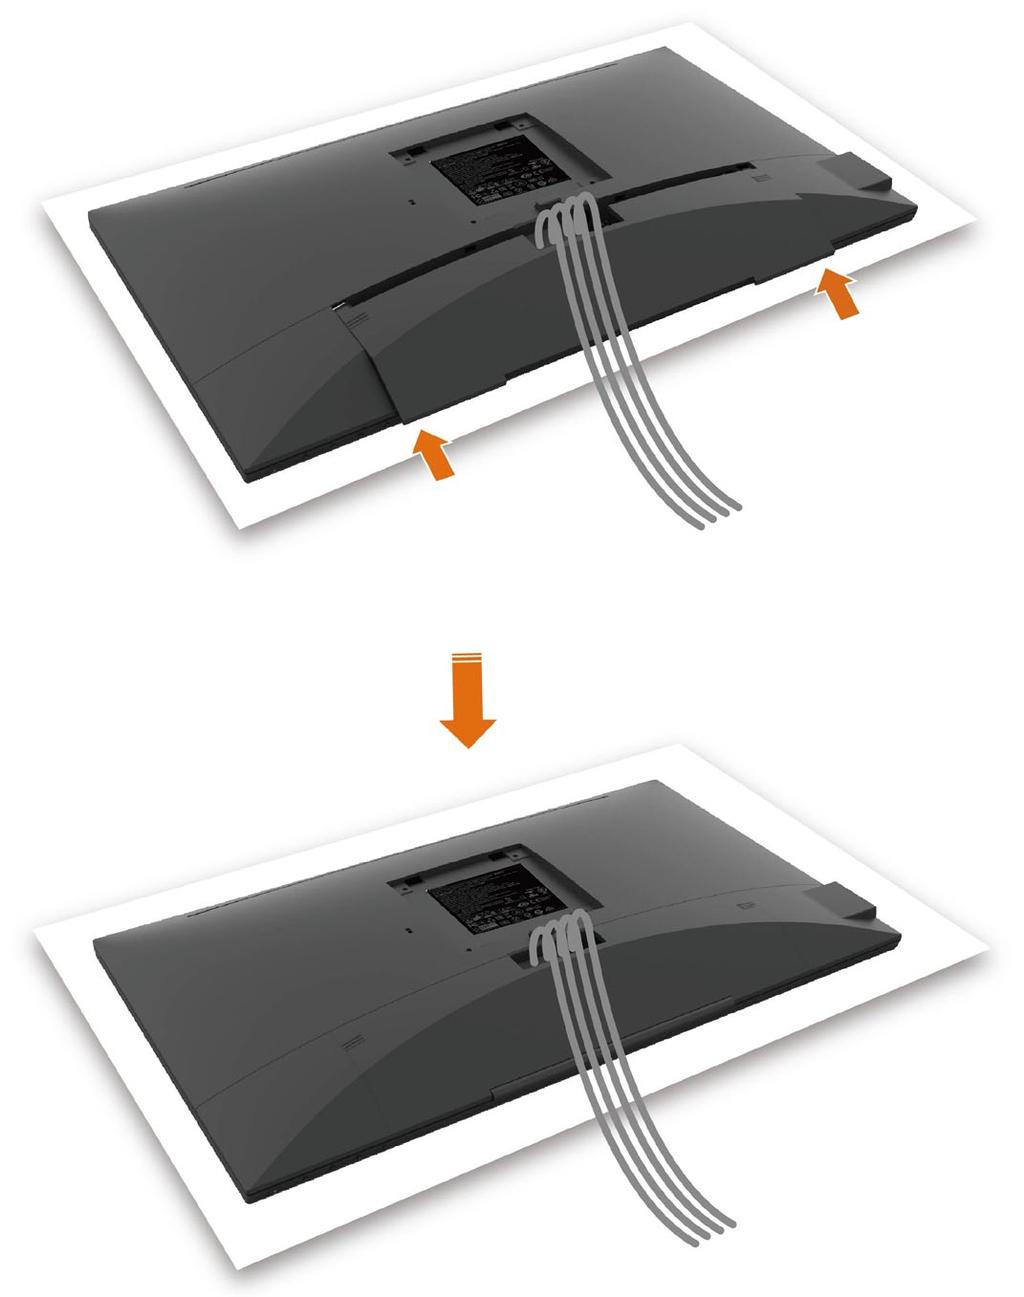 تركيب غطاء الكبل لتركيب غطاء الكبل: ضع غطاء الكبل بفتحة البطاقة.